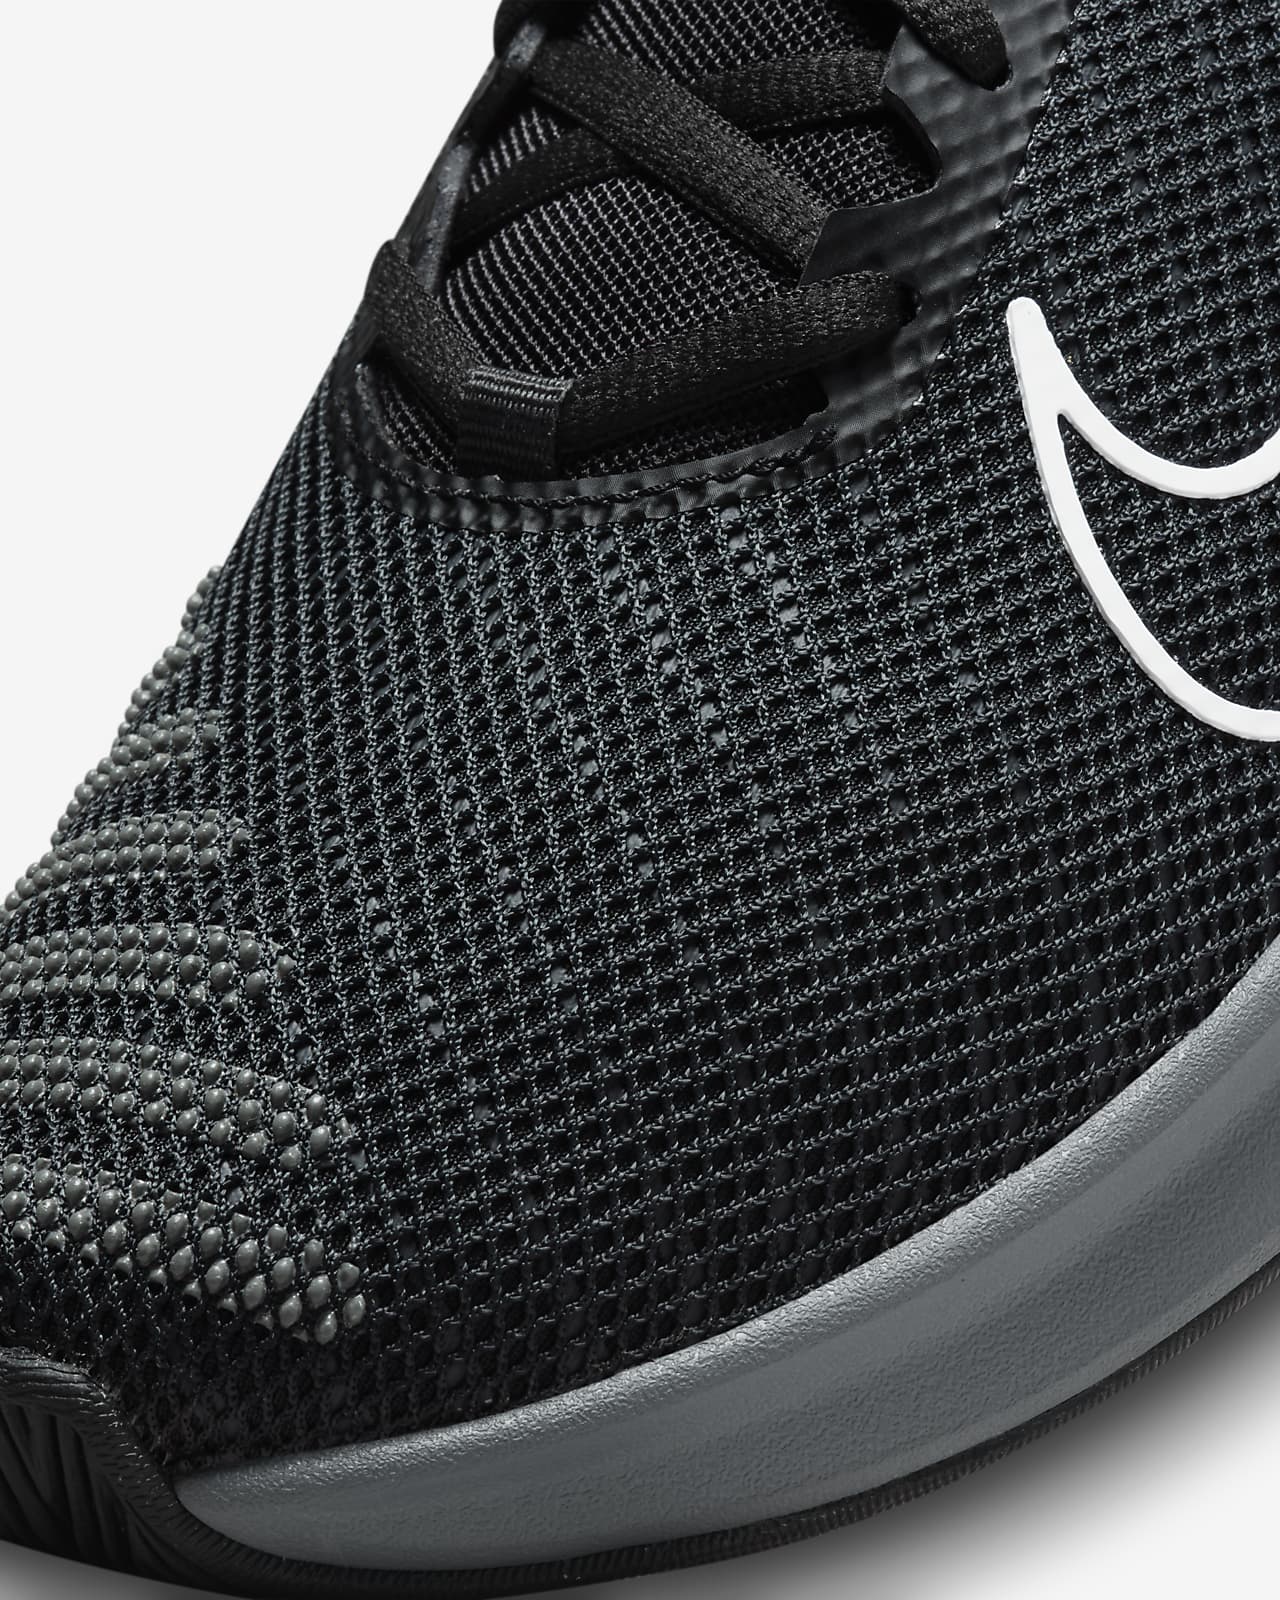 Nike Metcon 9 EasyOn Men's Workout Shoes.